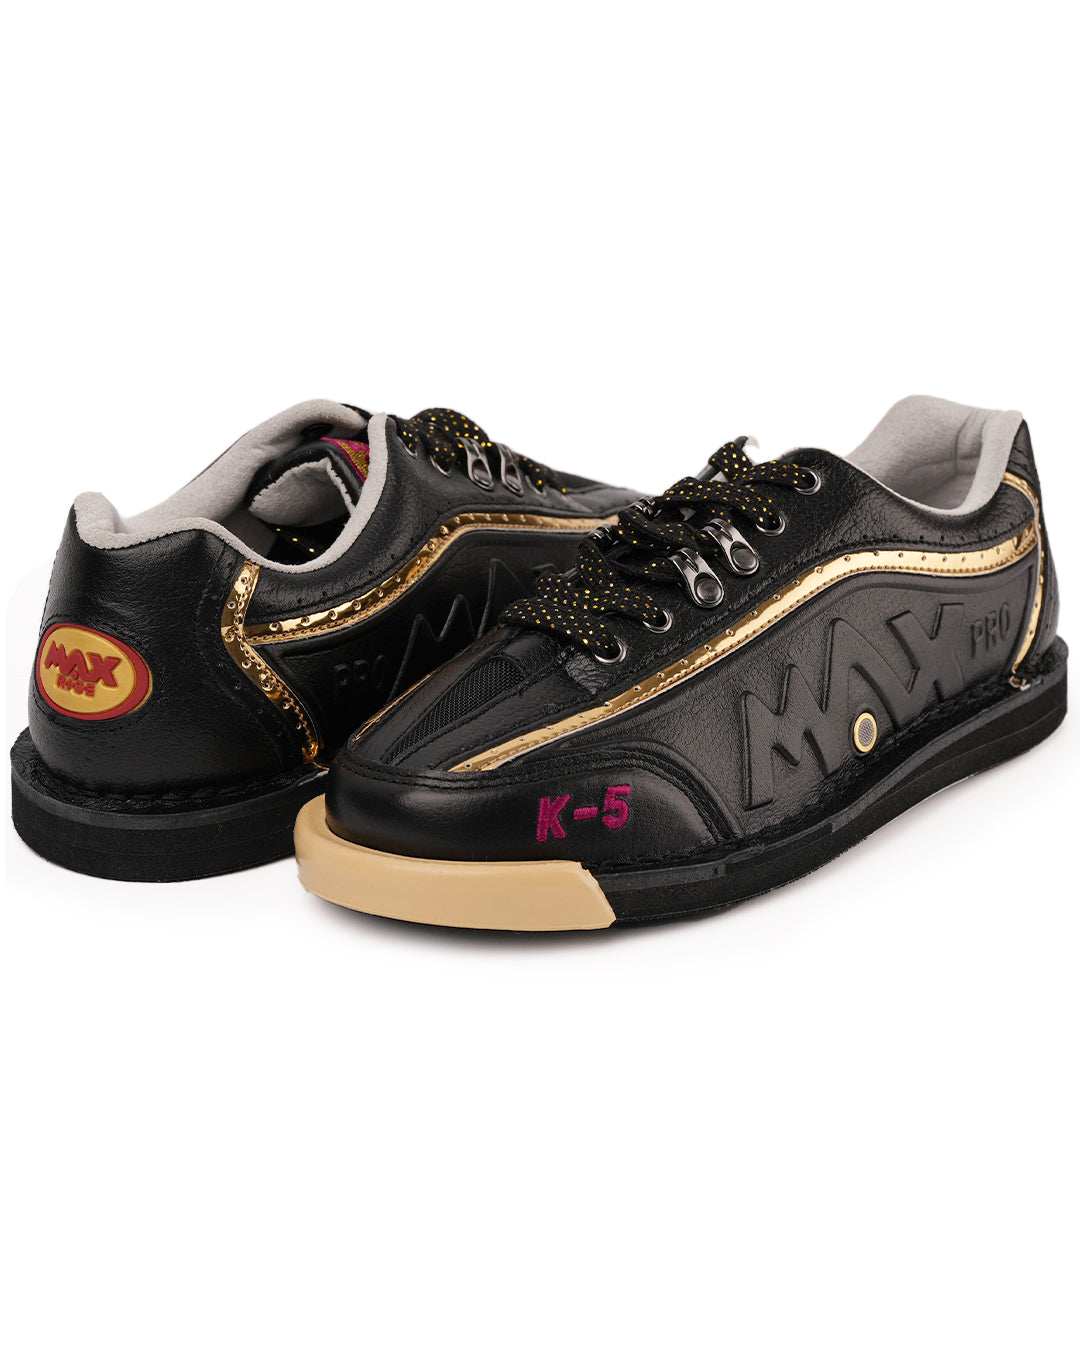 maxwelter k-5 k5 bowling shoes kangaroo leather black premium both